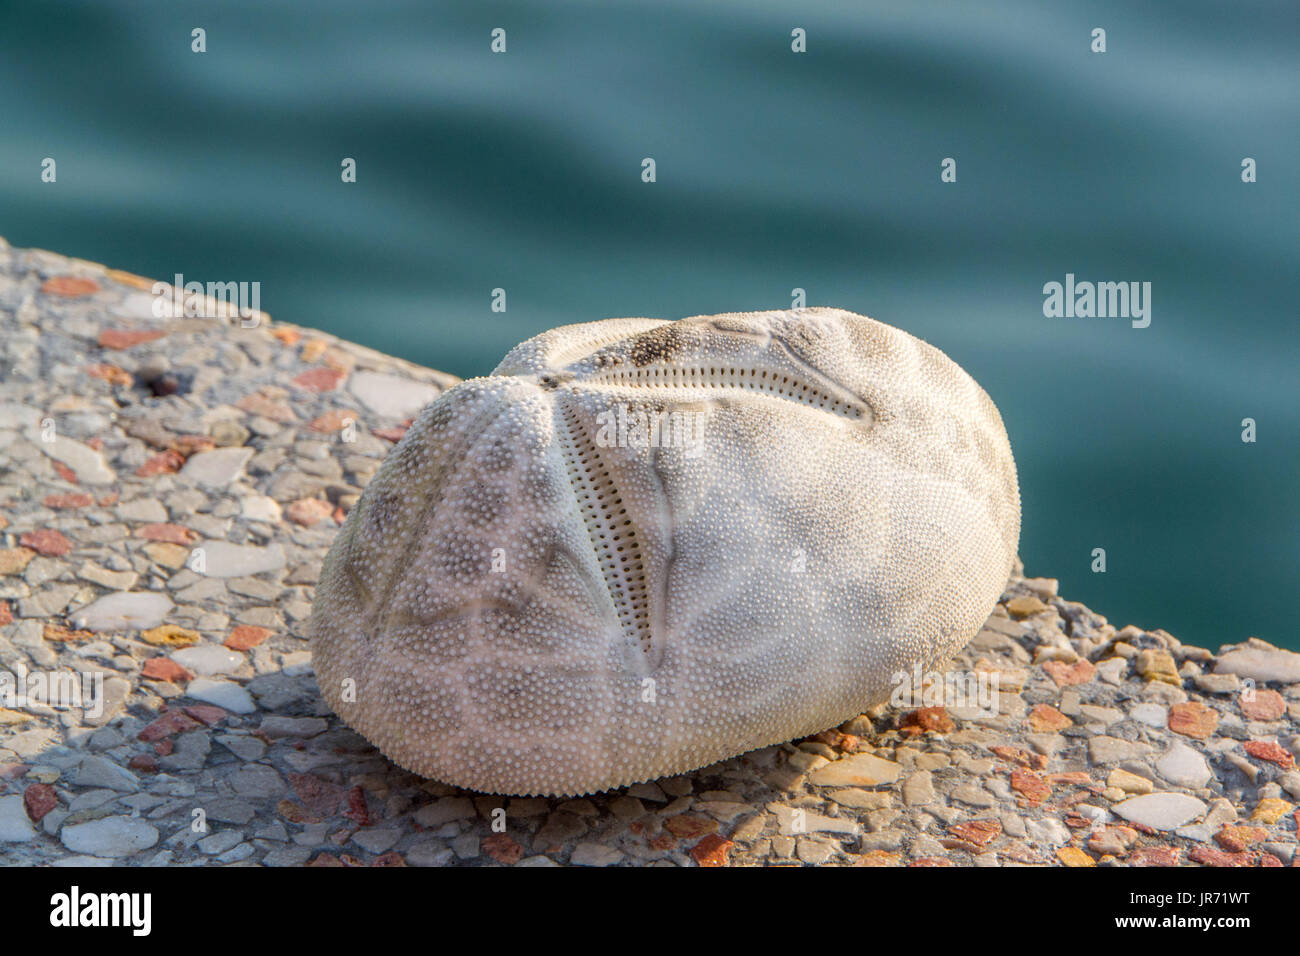 El mar, la patata es un erizo de mar en la familia Loveniidae. Se encuentra en el sub-regiones de mareas en los mares templados de todo el mundo y vive enterrada en la arena Foto de stock